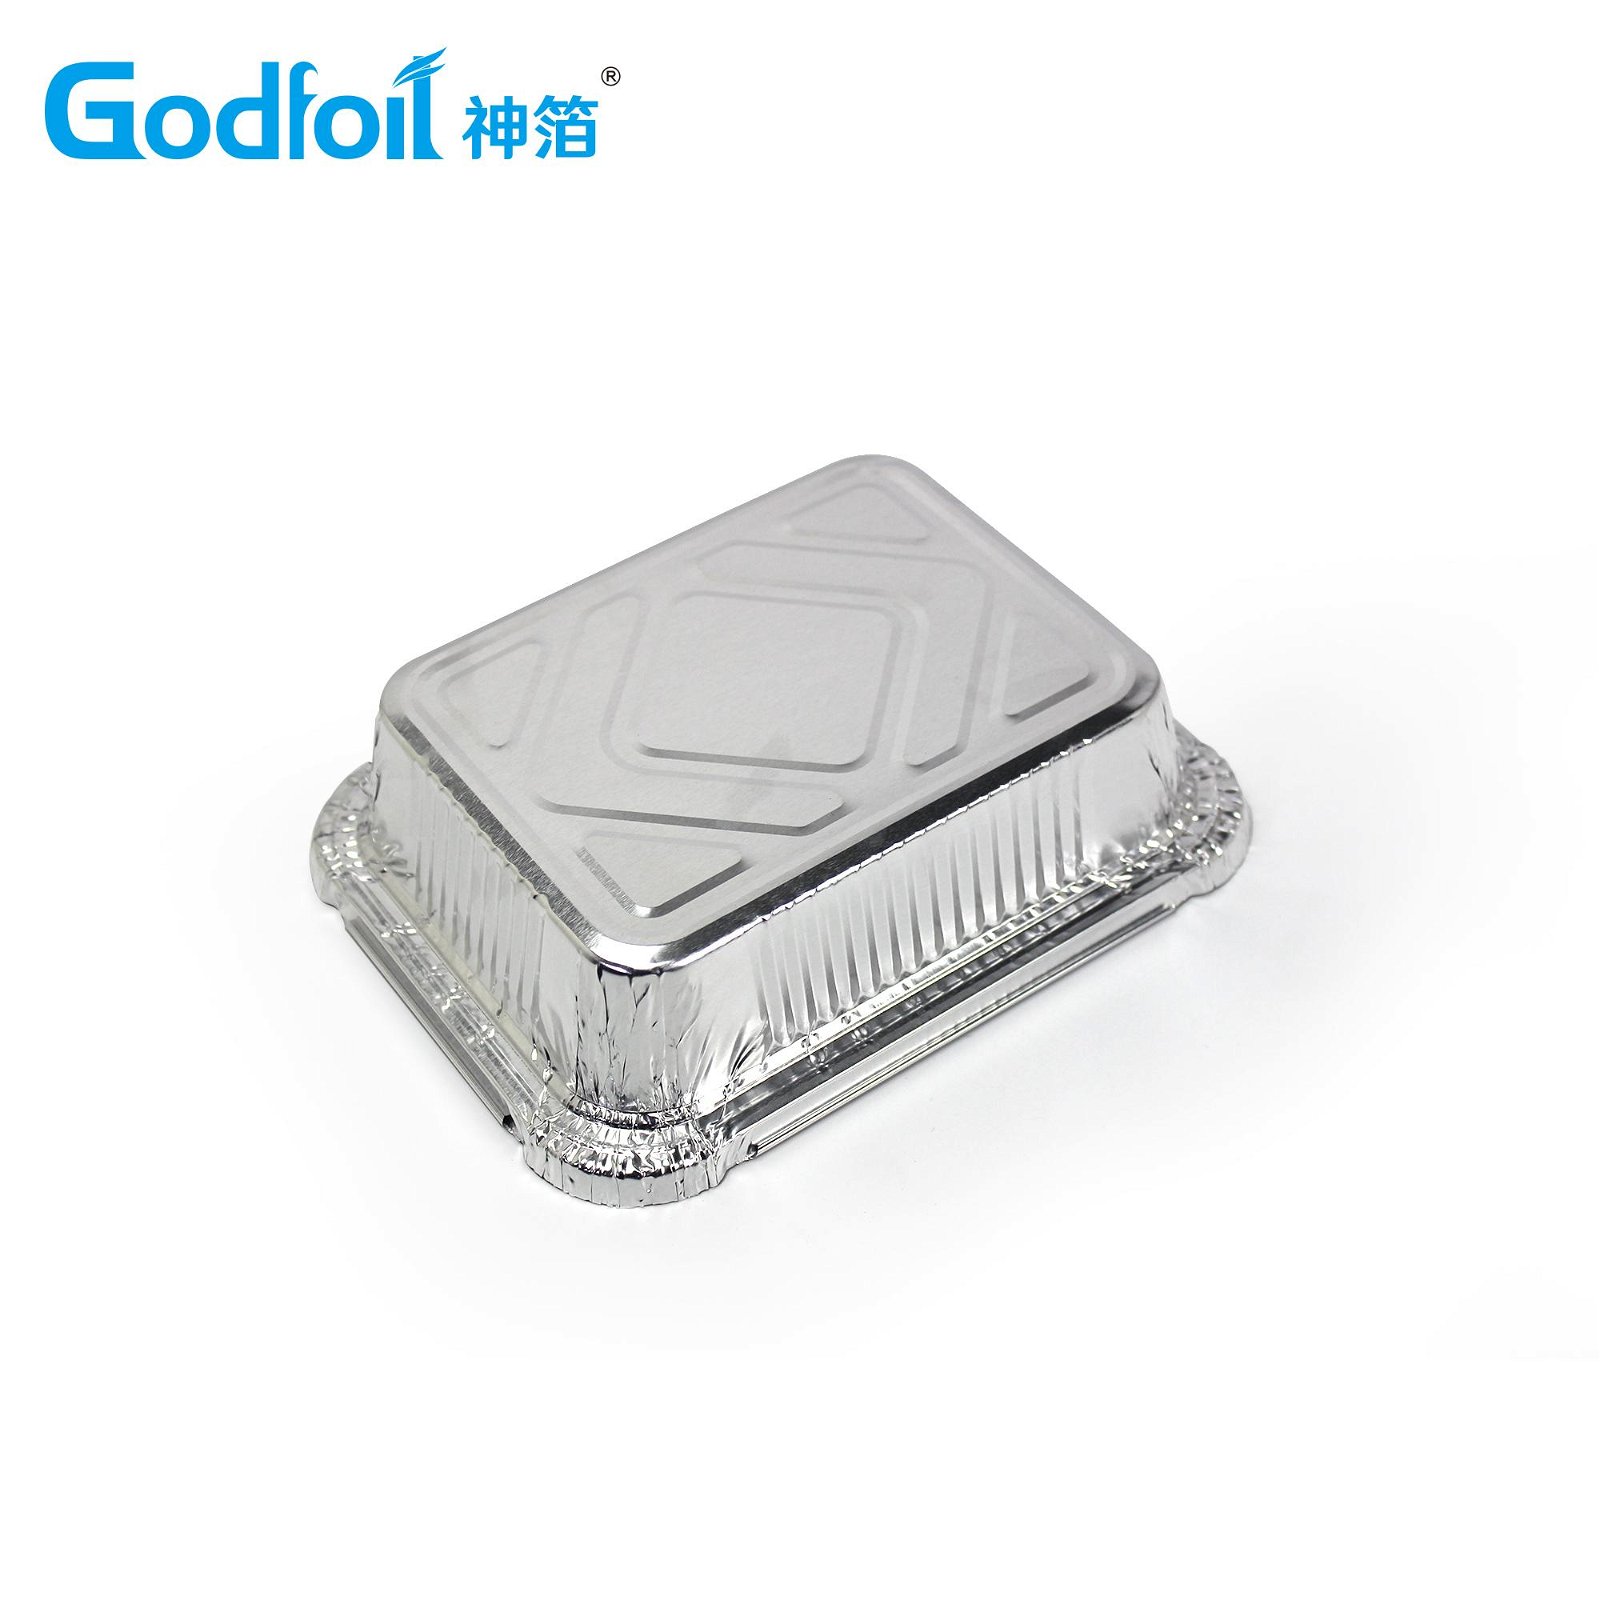 Oblong Aluminum Foil Container Mould 3